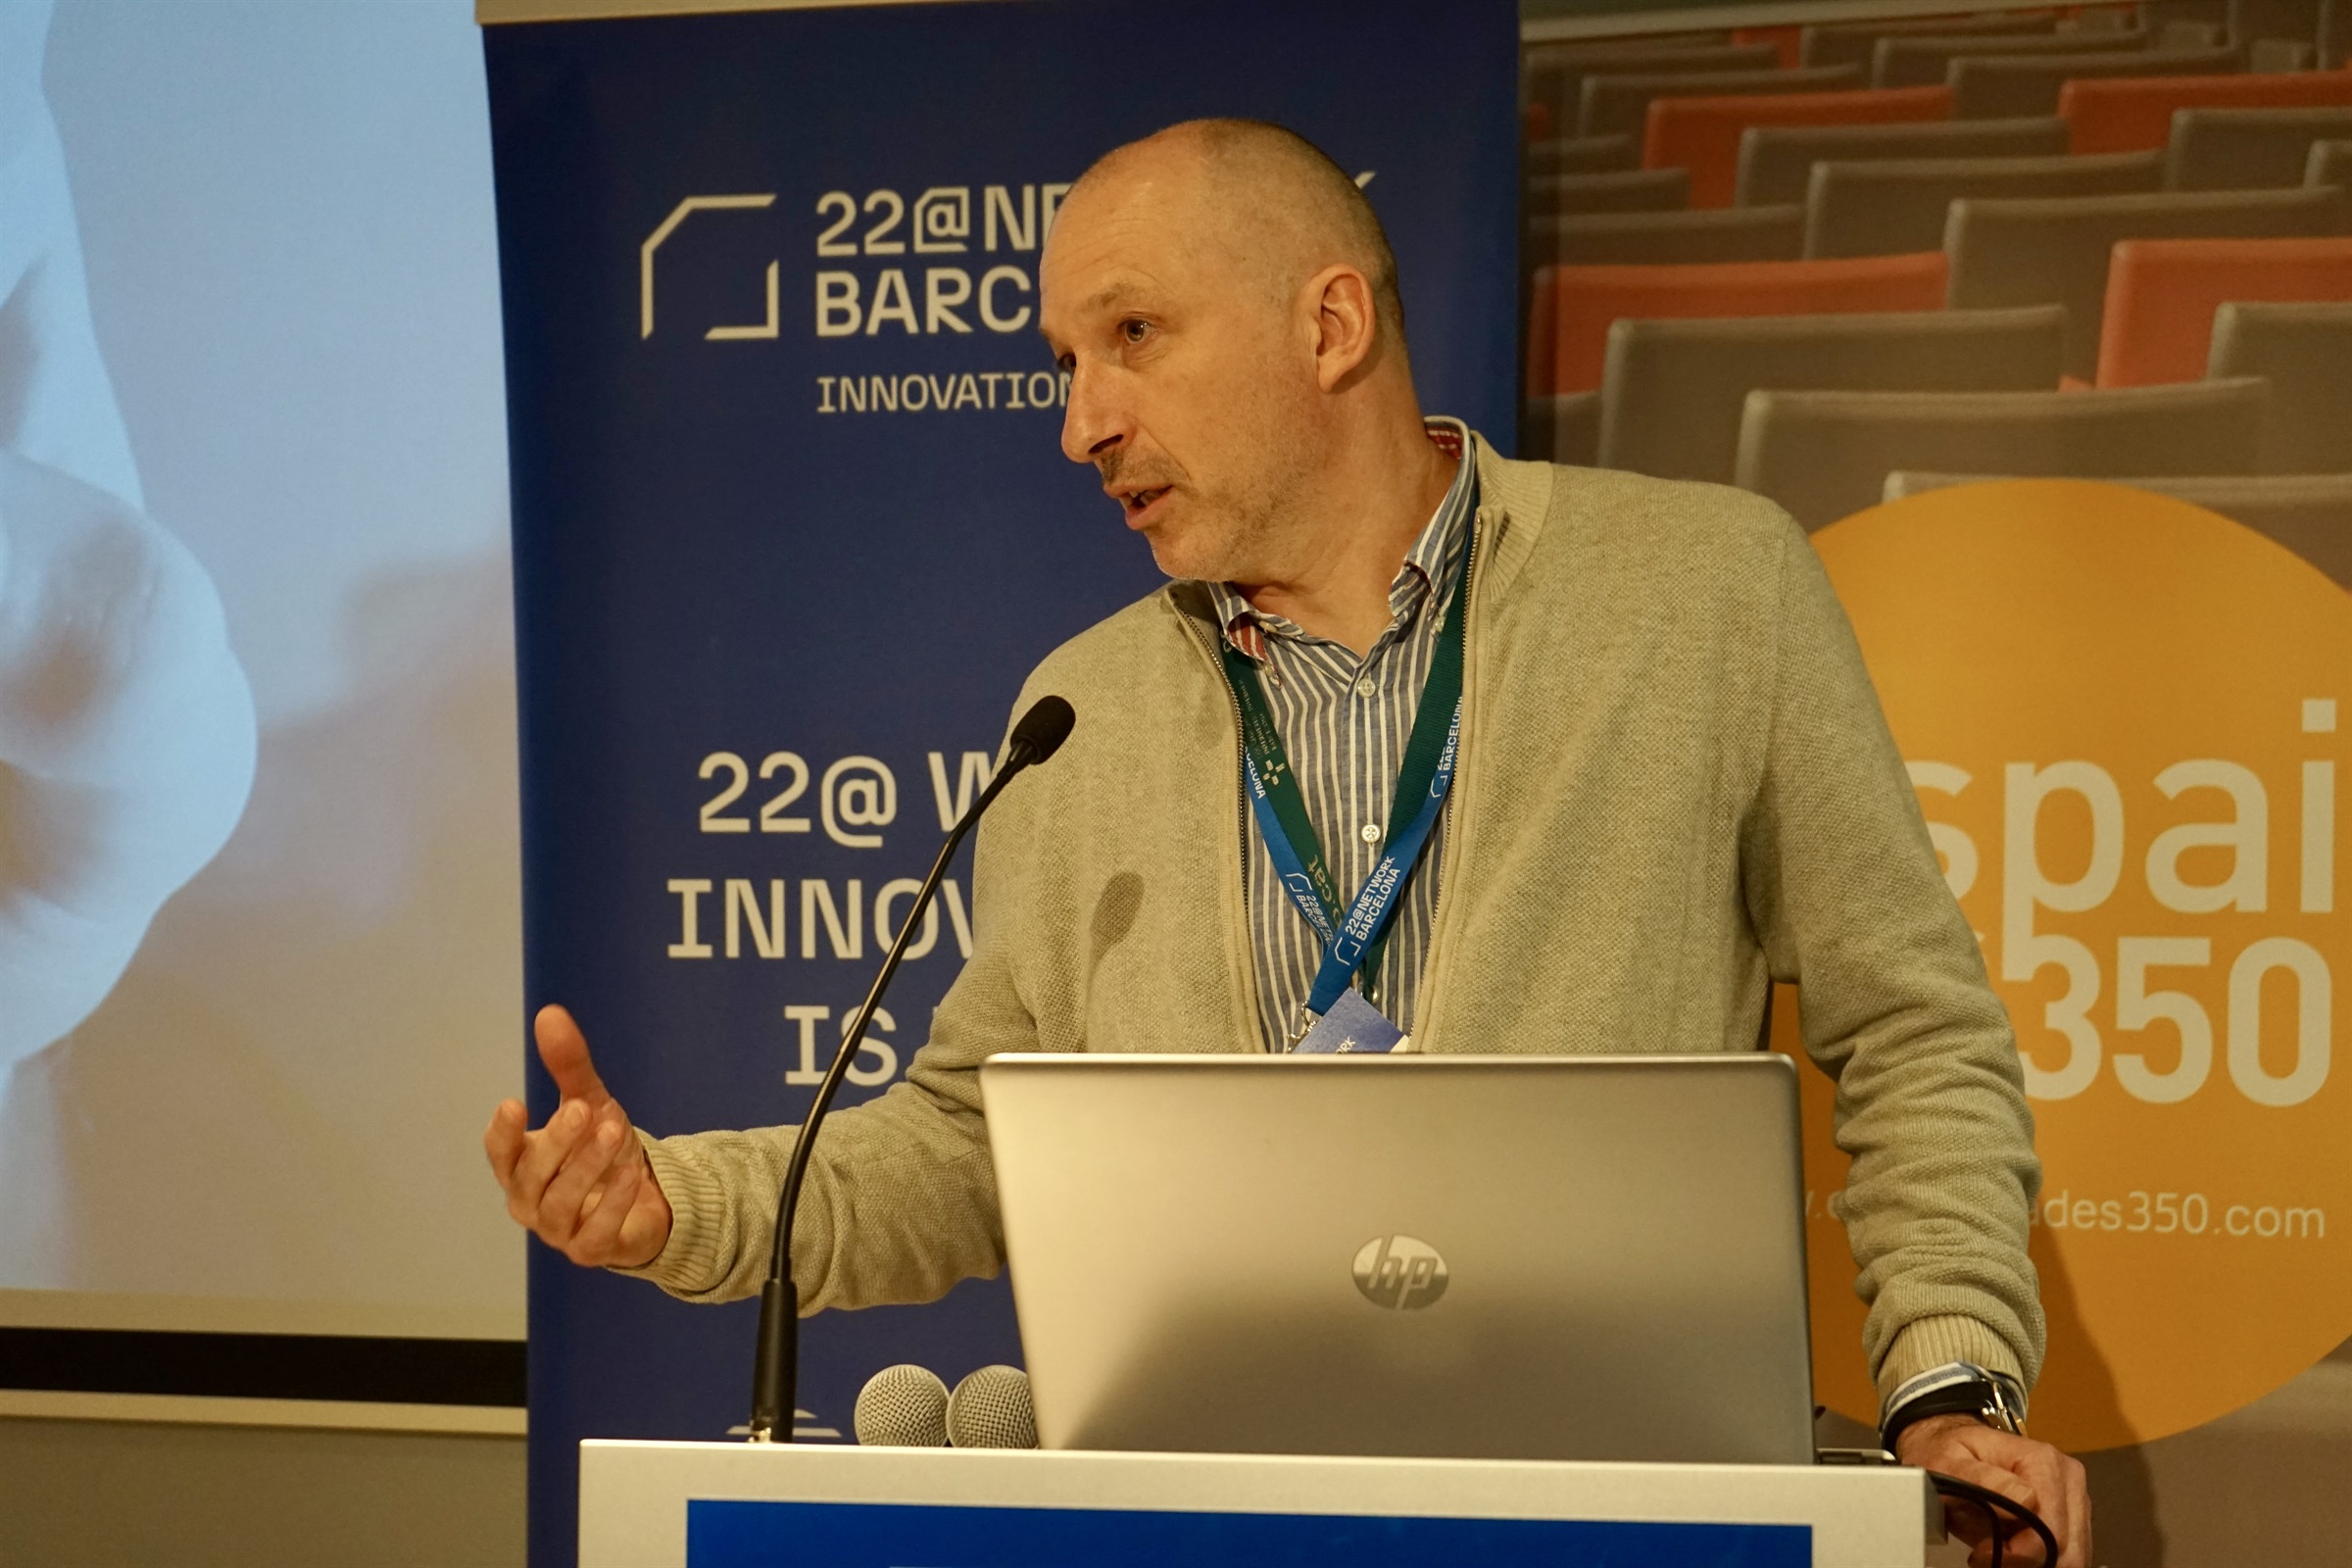 El COIB acull la jornada d’Innovació en l’ecosistema de la salut, jornada organitzada pel 22@Network Barcelona